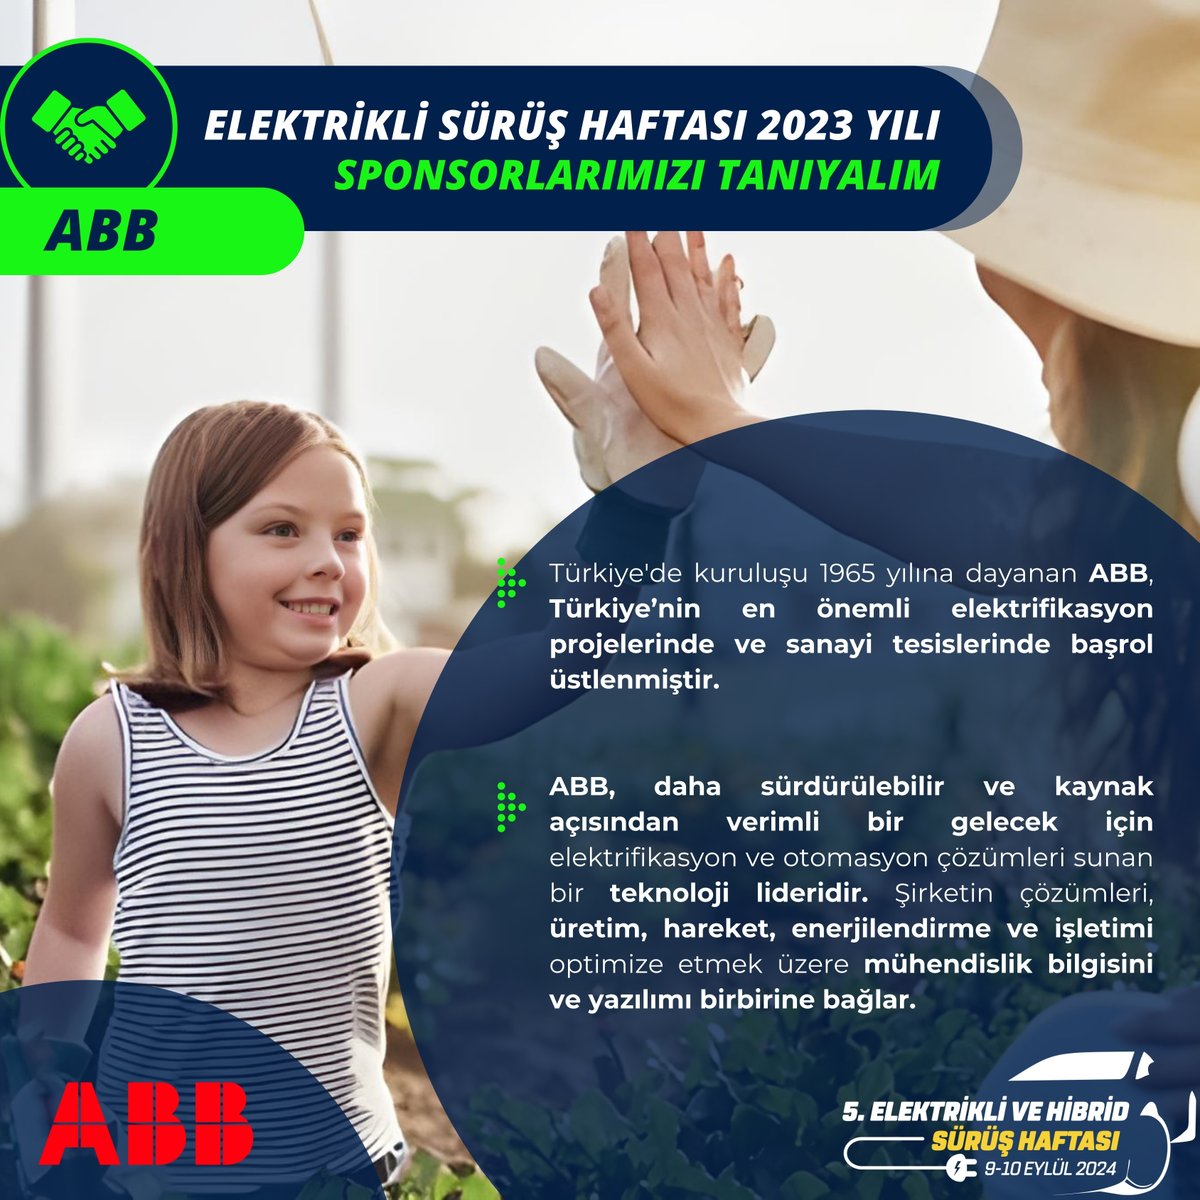 ⚡Türkiye'de kuruluşu 1965 yılına dayanan ABB, Türkiye’nin en önemli elektrifikasyon projelerinde ve sanayi tesislerinde başrol üstlenmiştir. @ehcars #elektriklisürüşhaftası #elektrikliaraba #electriccars #hybrid @ABBgroupnews @ABBTurkiye